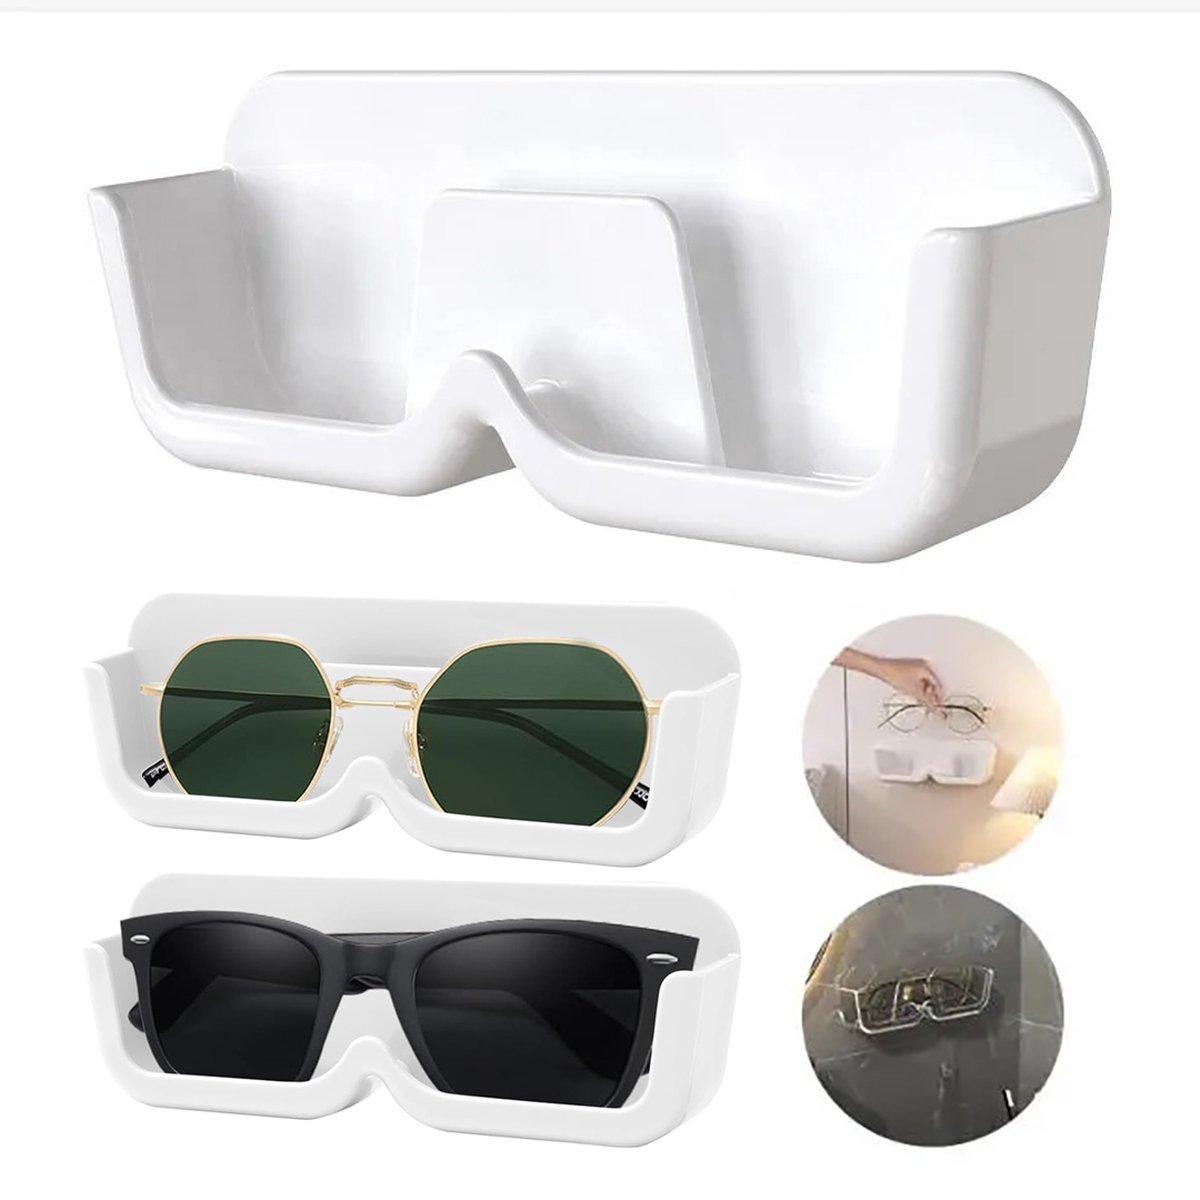 Consumerce® Ophangbare Brillen Opbergdoos – Zonnebrillen Display Opbergbox – Doos – Box – Standaard – Brillendoos – Opbergen – Rek - Display